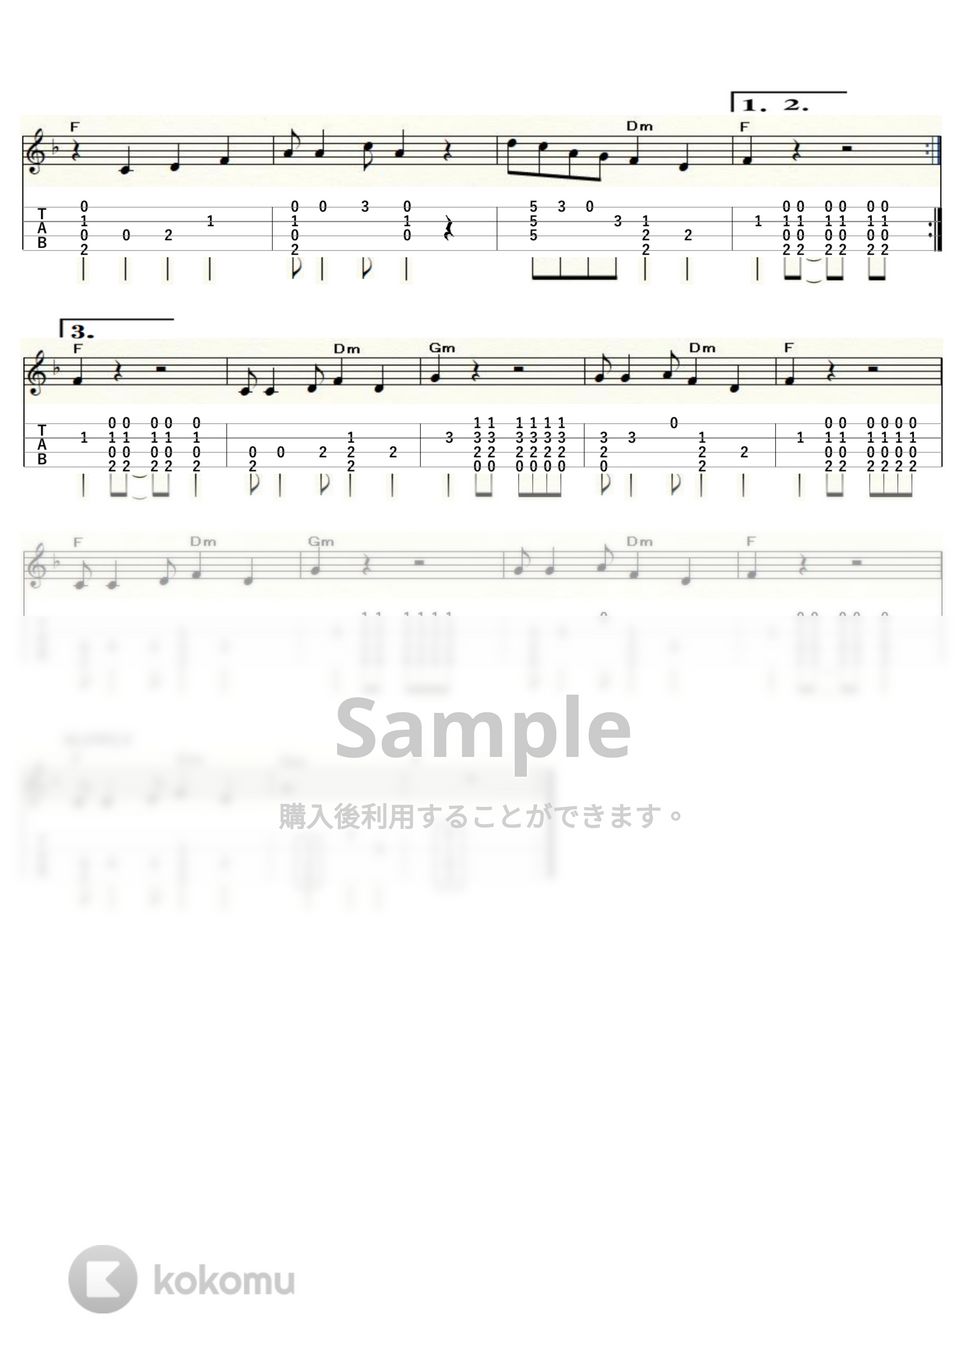 デューク・エイセス/ザ・ドリフターズ - いい湯だな (ｳｸﾚﾚｿﾛ/Low-G/中級) by ukulelepapa